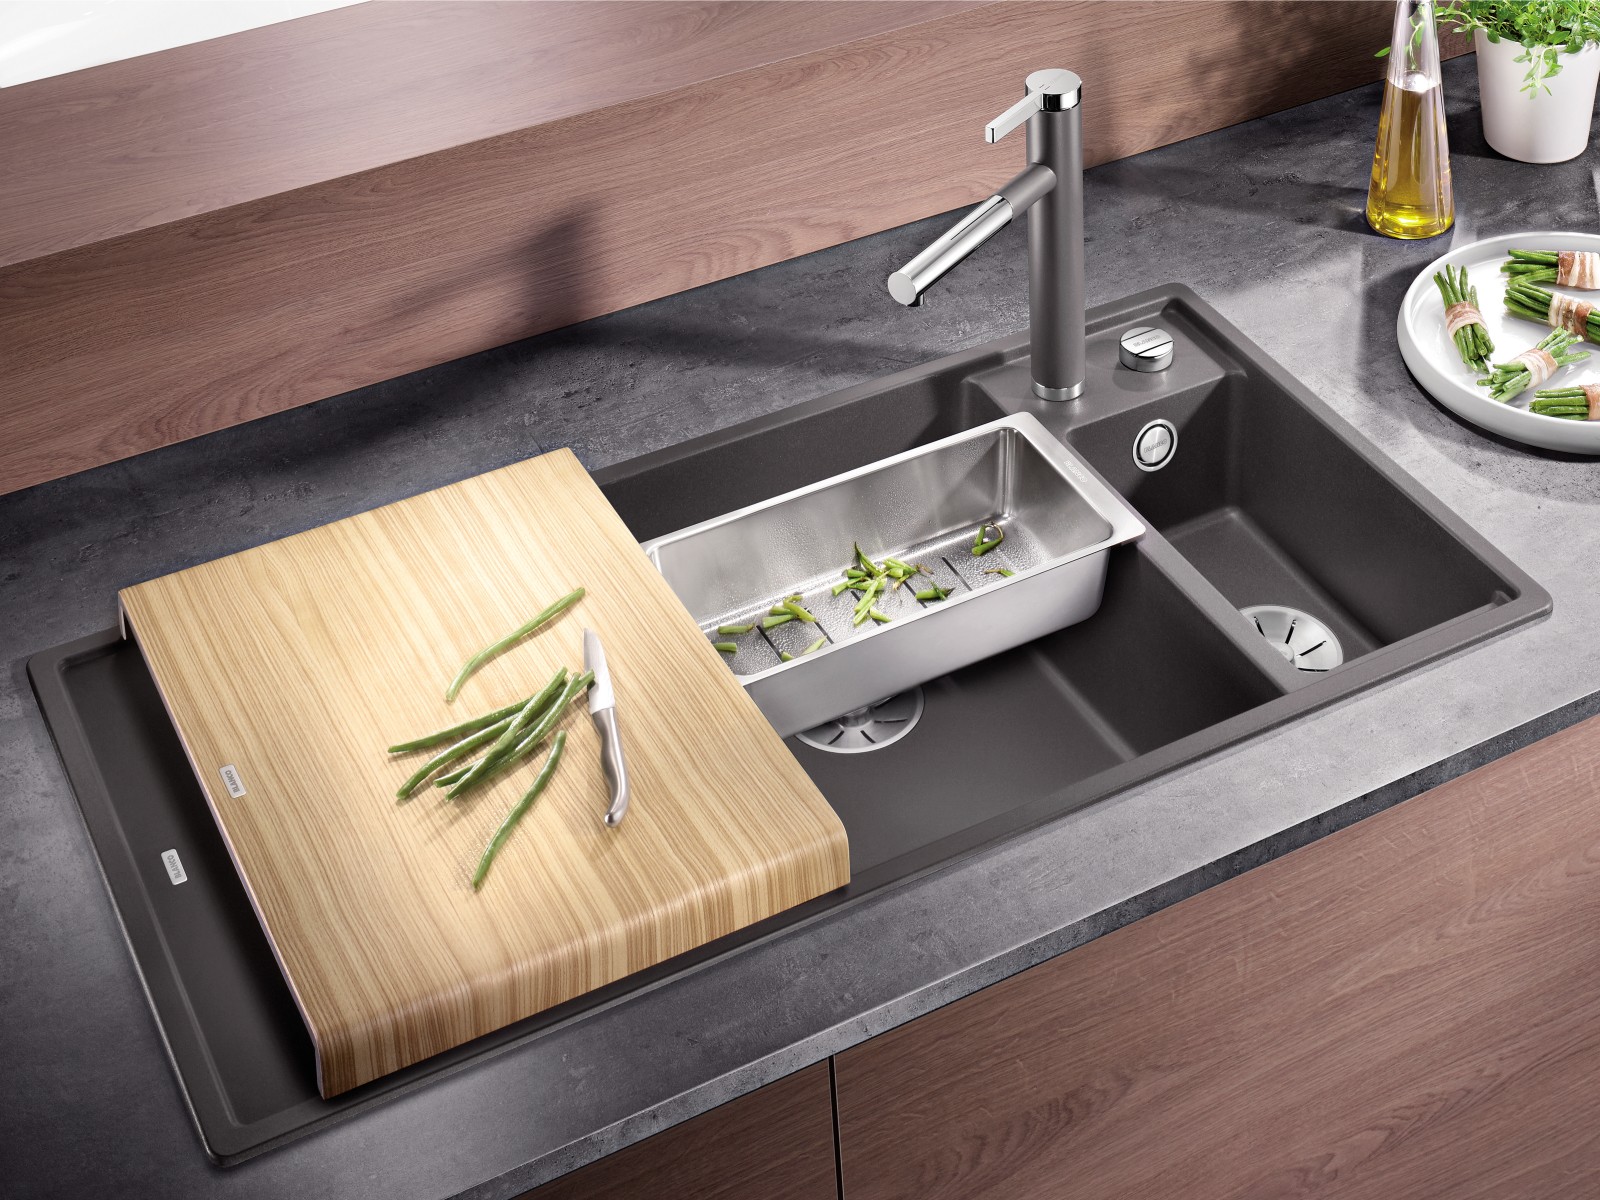 kitchen sink accessories market share